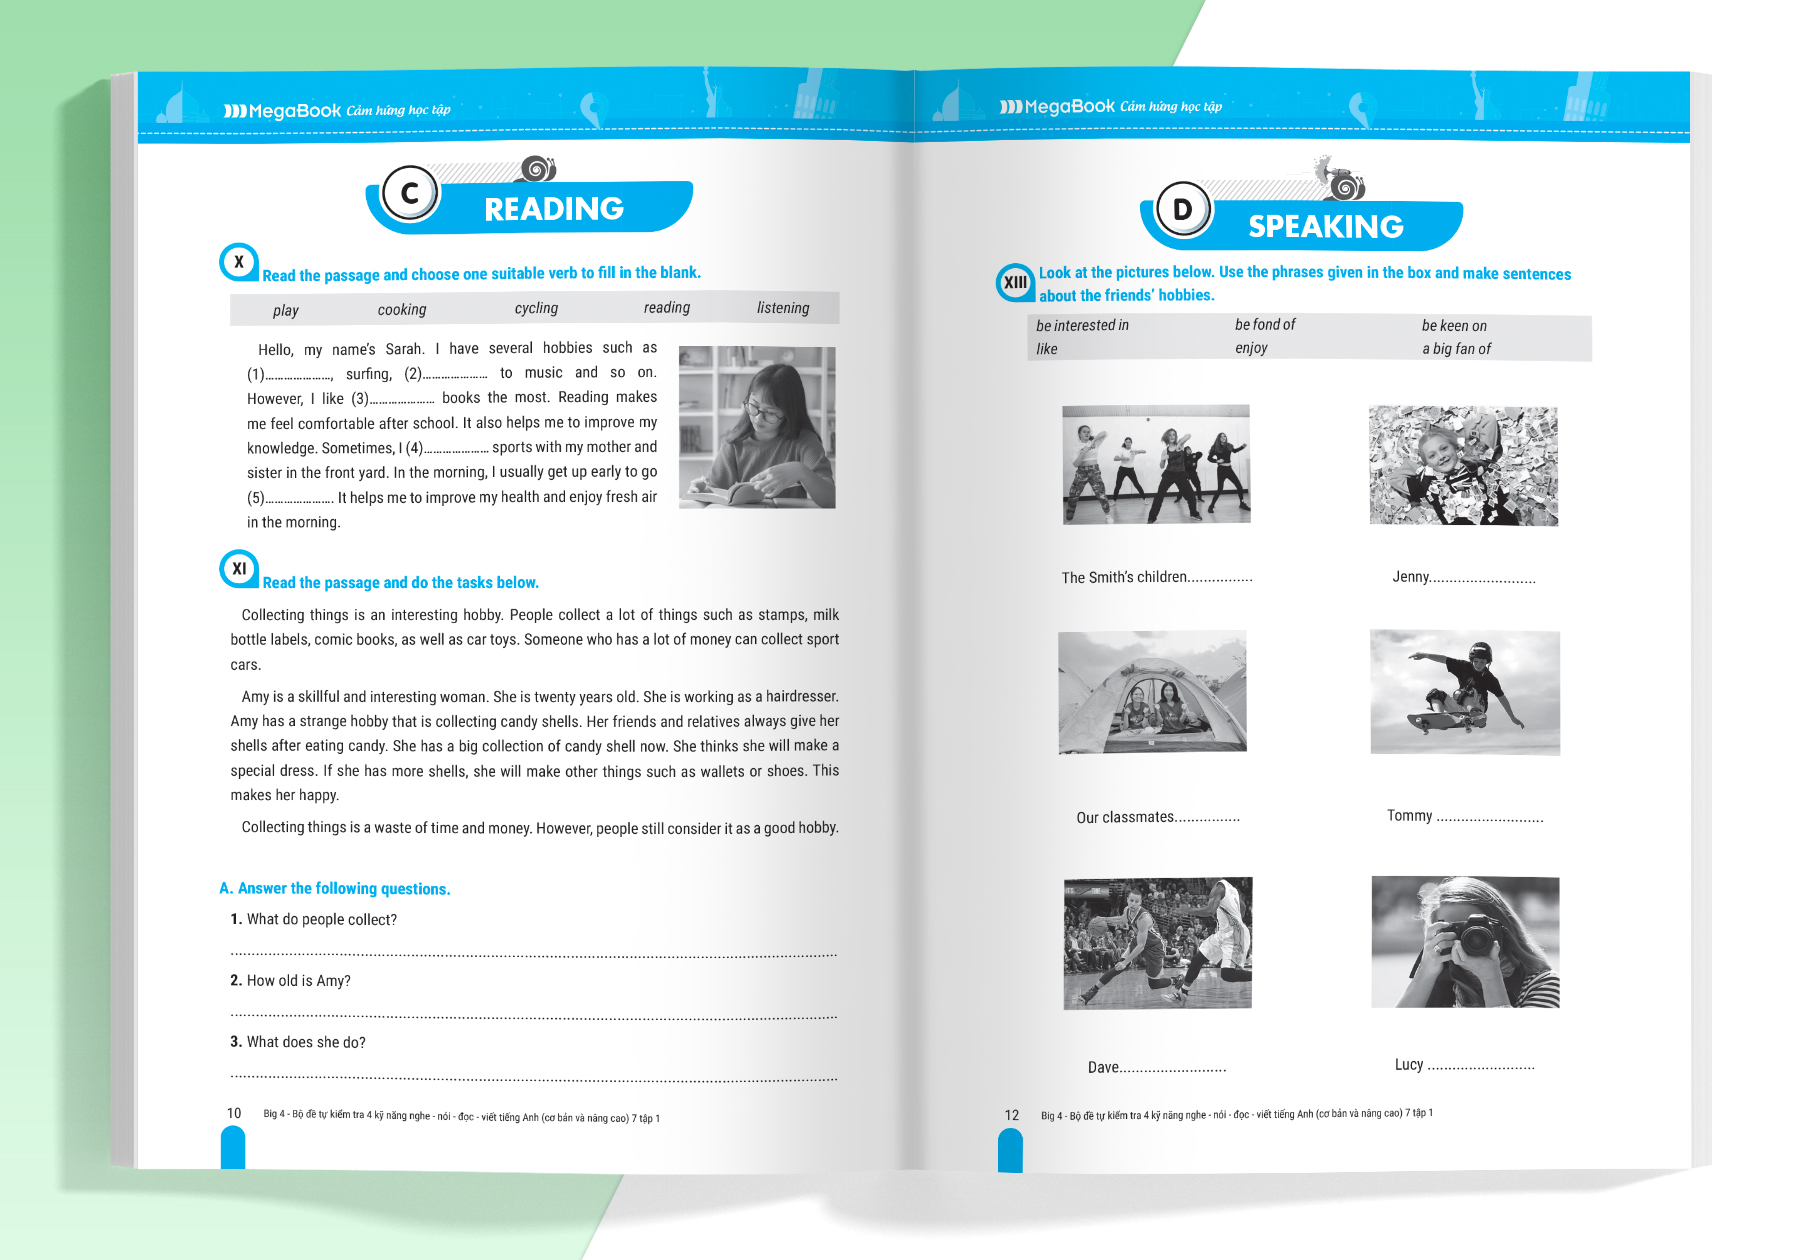 Hình ảnh Sách - Big 4 bộ đề tự kiểm tra 4 kỹ năng Nghe - Nói - Đọc - Viết tiếng Anh cơ bản và nâng cao lớp 7 tập 1 (Global) (MG)